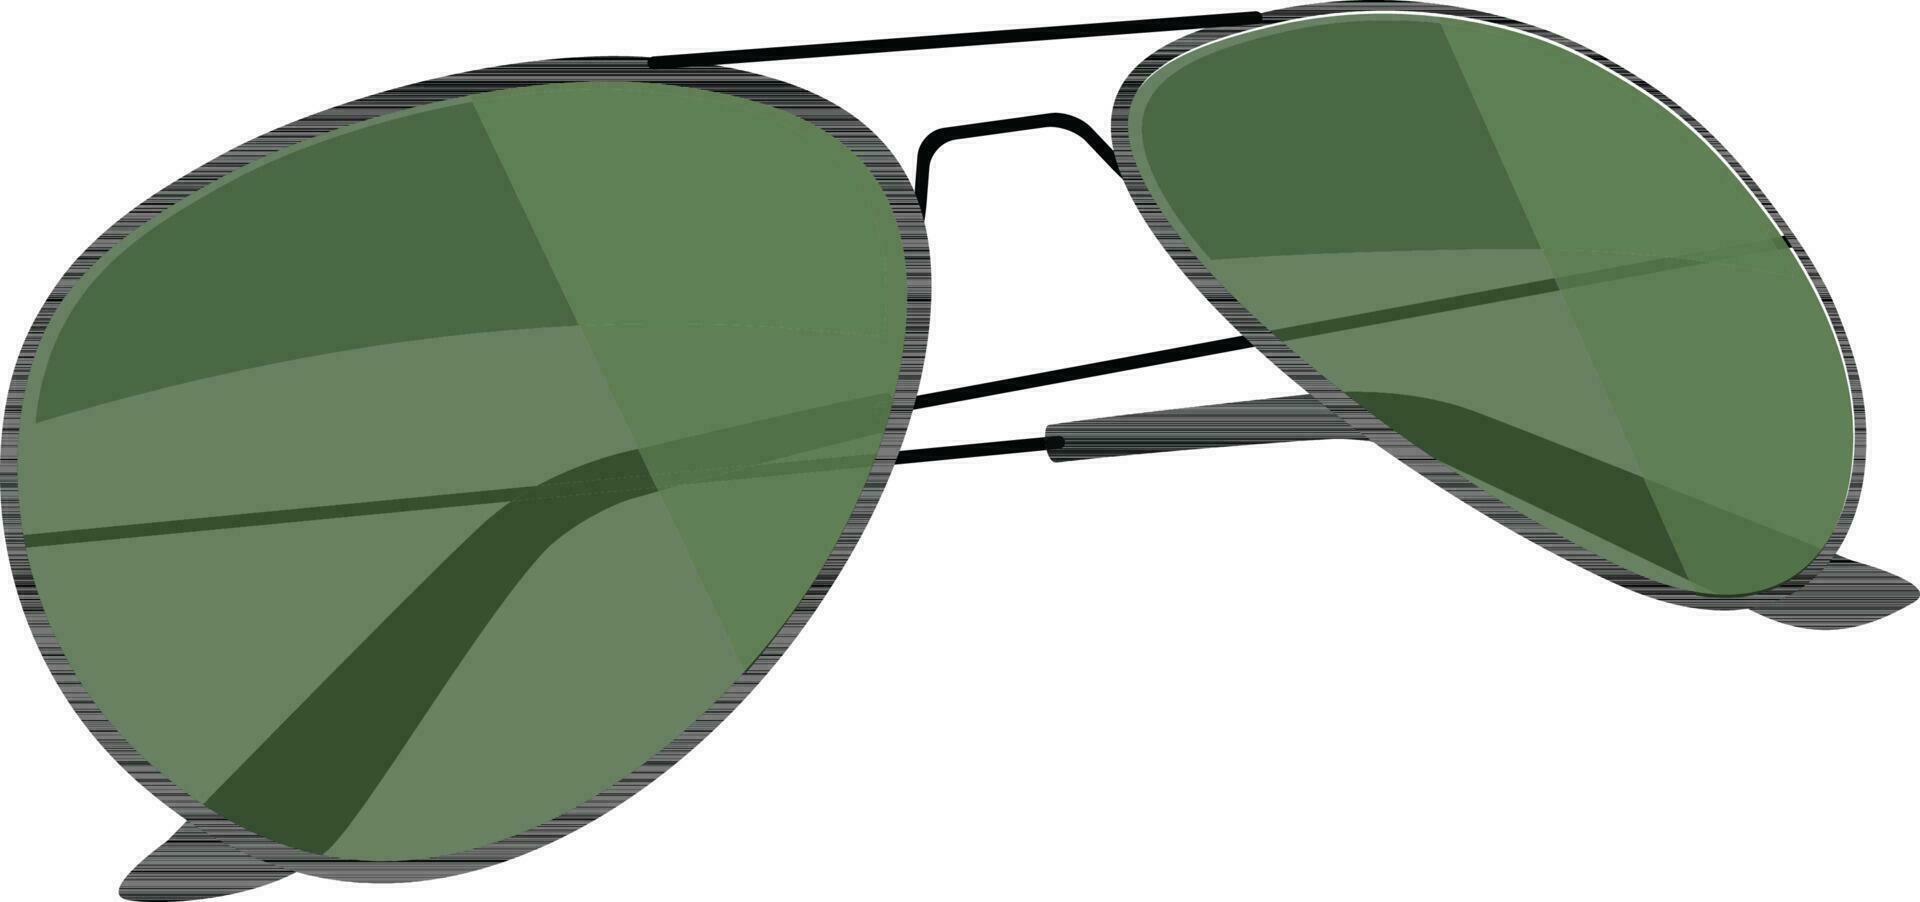 Illustration of stylish eye glasses. vector